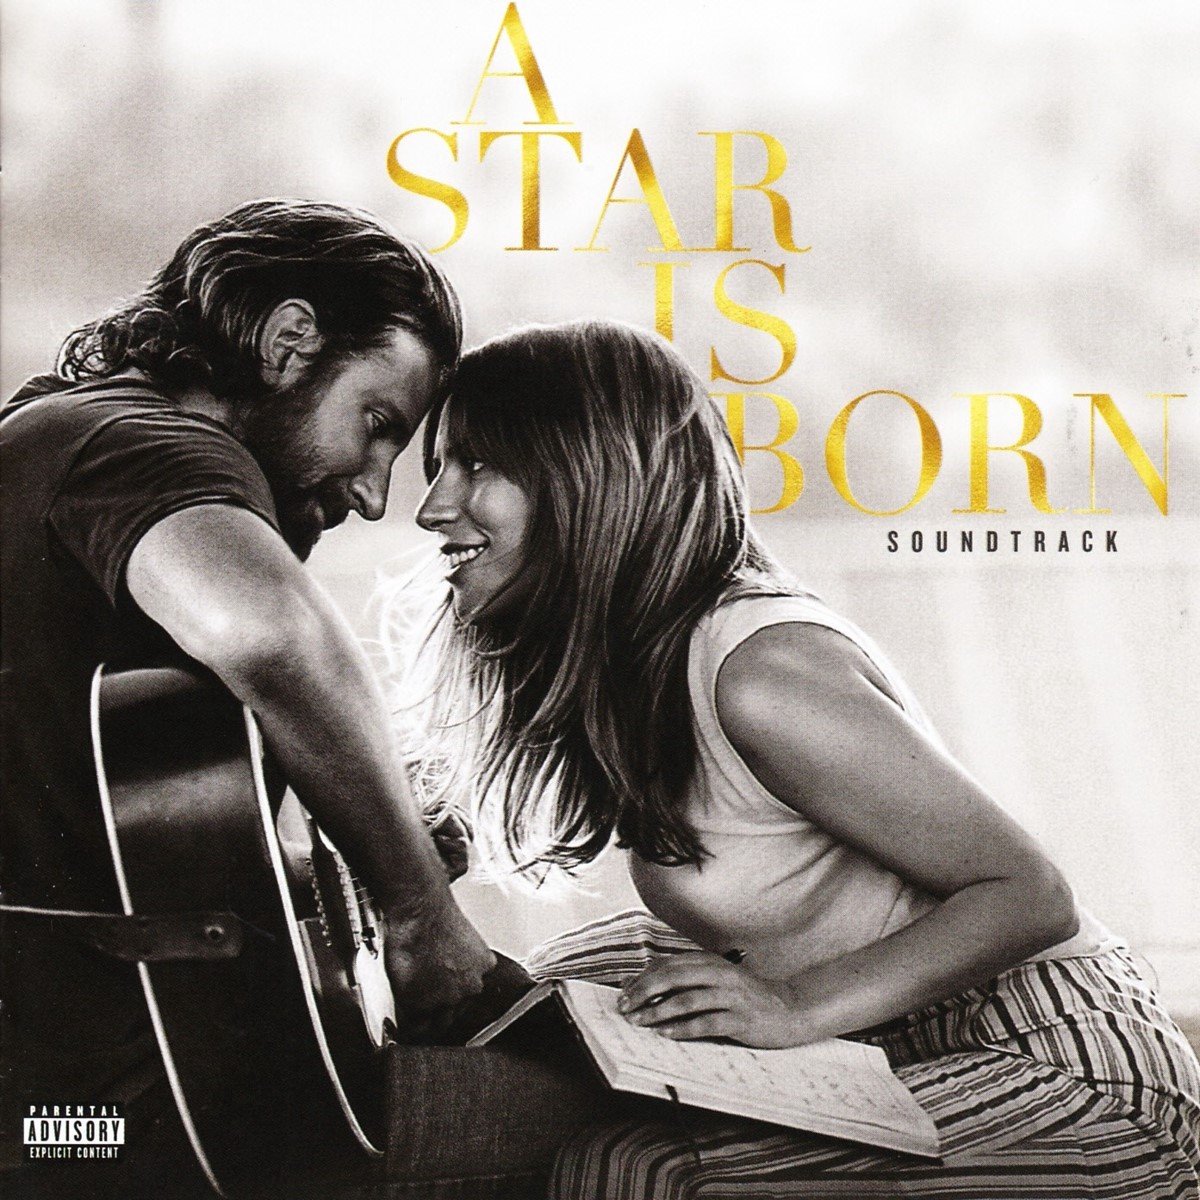 Lady Gaga & Bradley Cooper - A Star Is Born (CD) (Original Soundtrack) - Lady Gaga